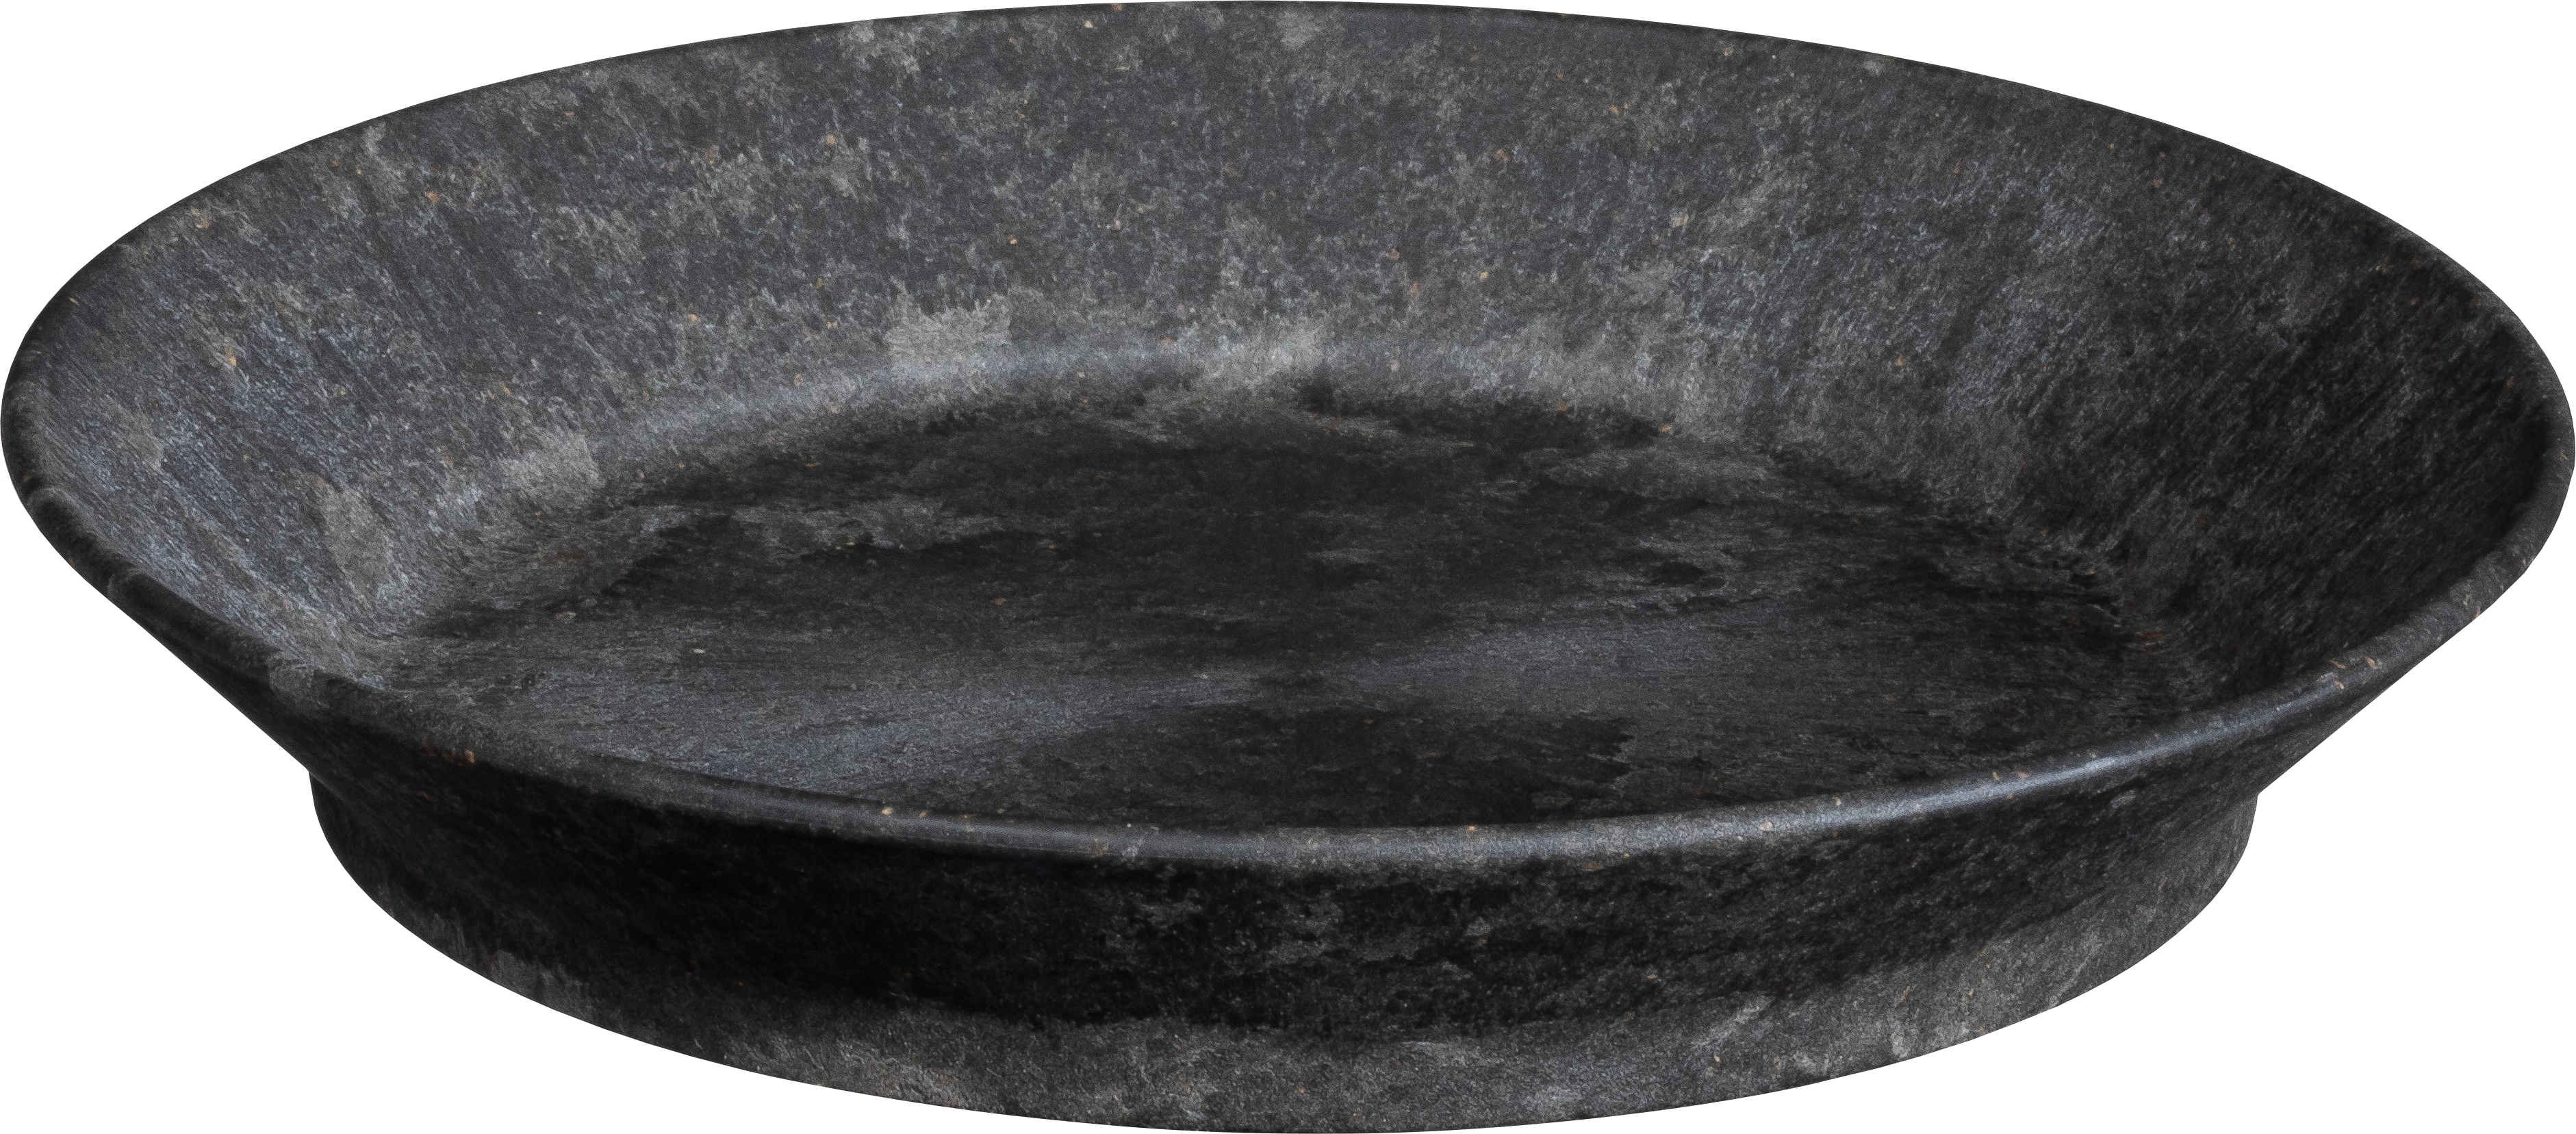 Luups tallerken uden fane, sort, ø18 cm